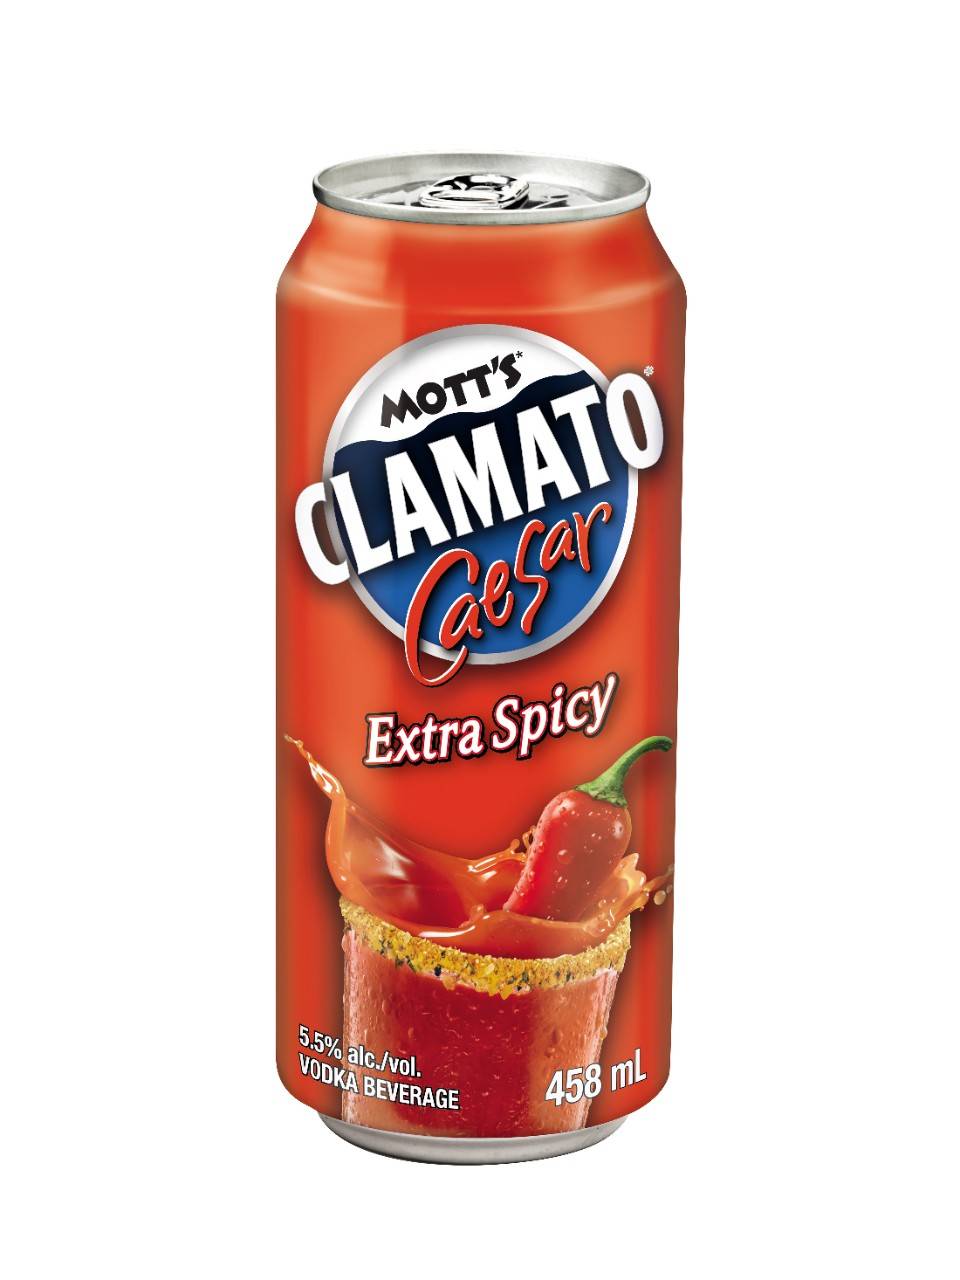 Clamato Mott's Extra Spicy Caesar (458 ml)